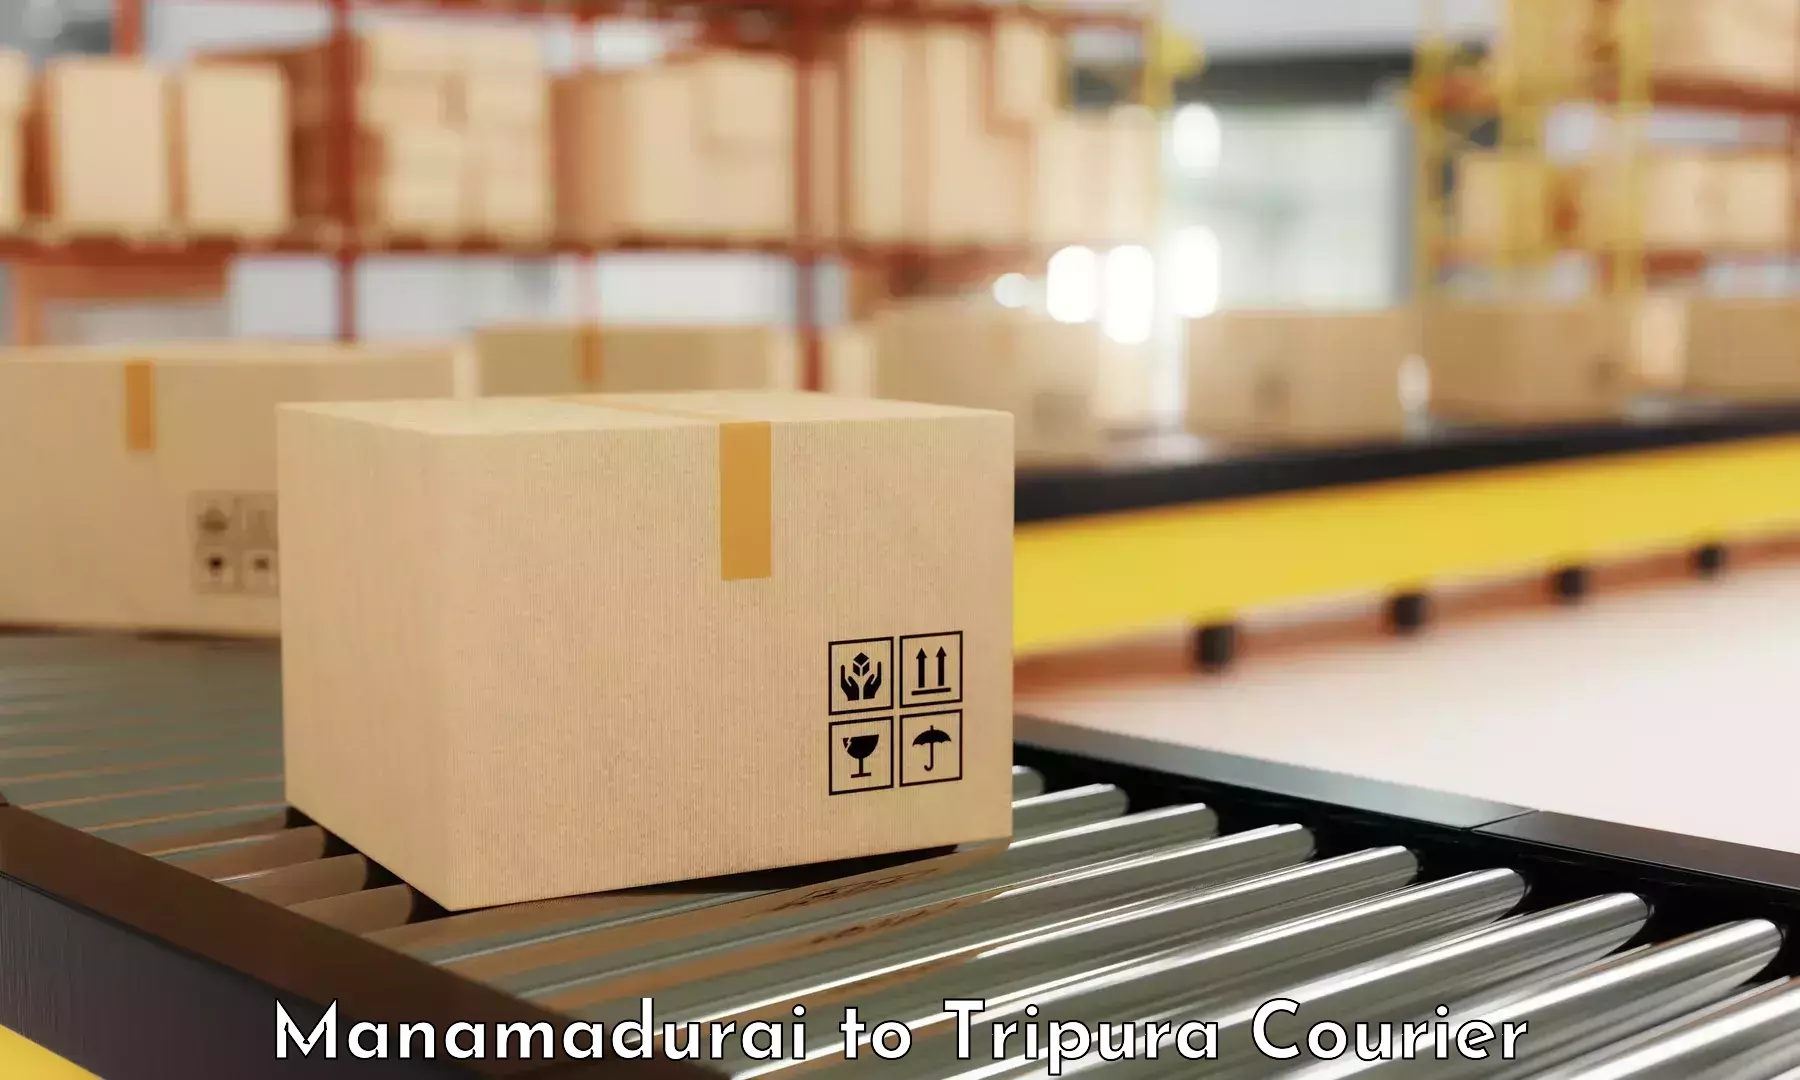 Global shipping networks Manamadurai to Ambassa